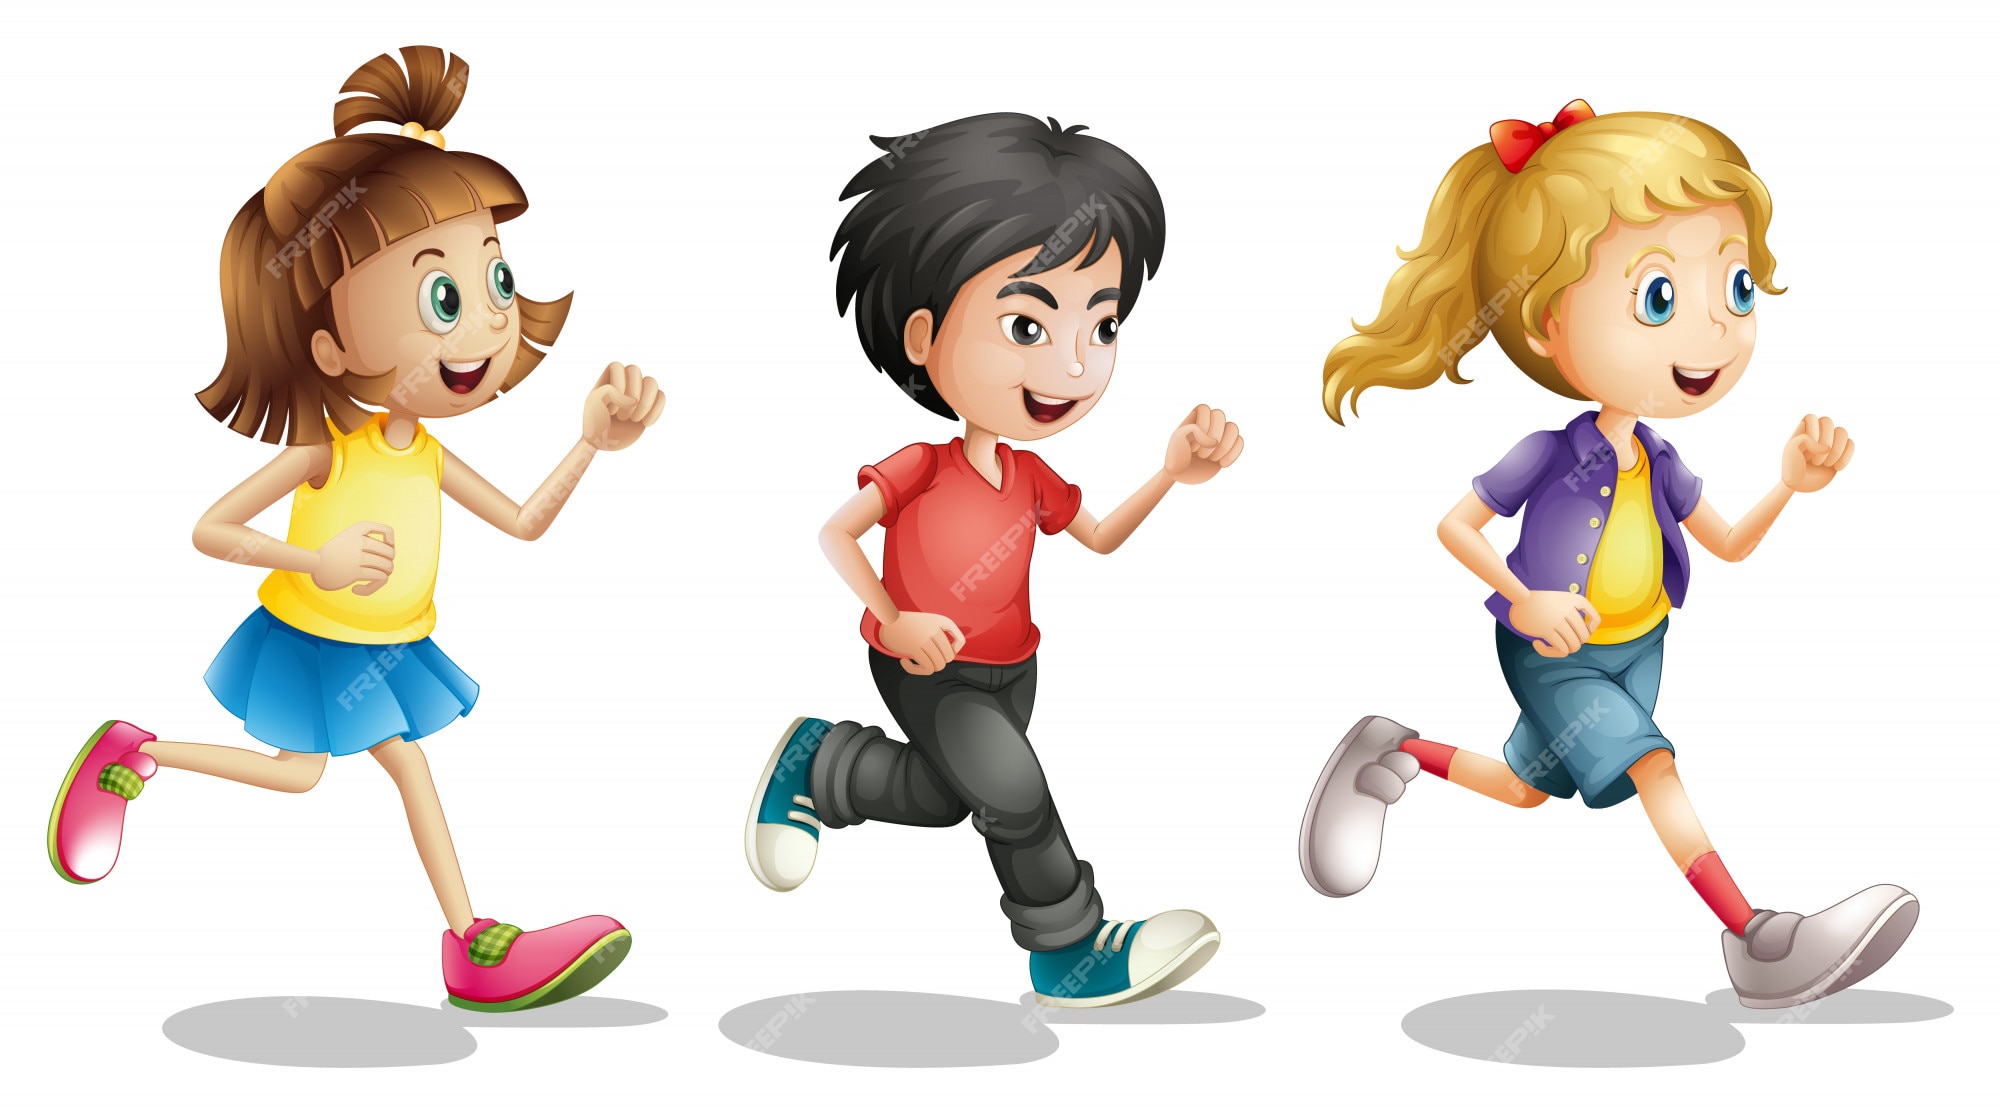 Kid Running Cartoon Images - Free Download on Freepik